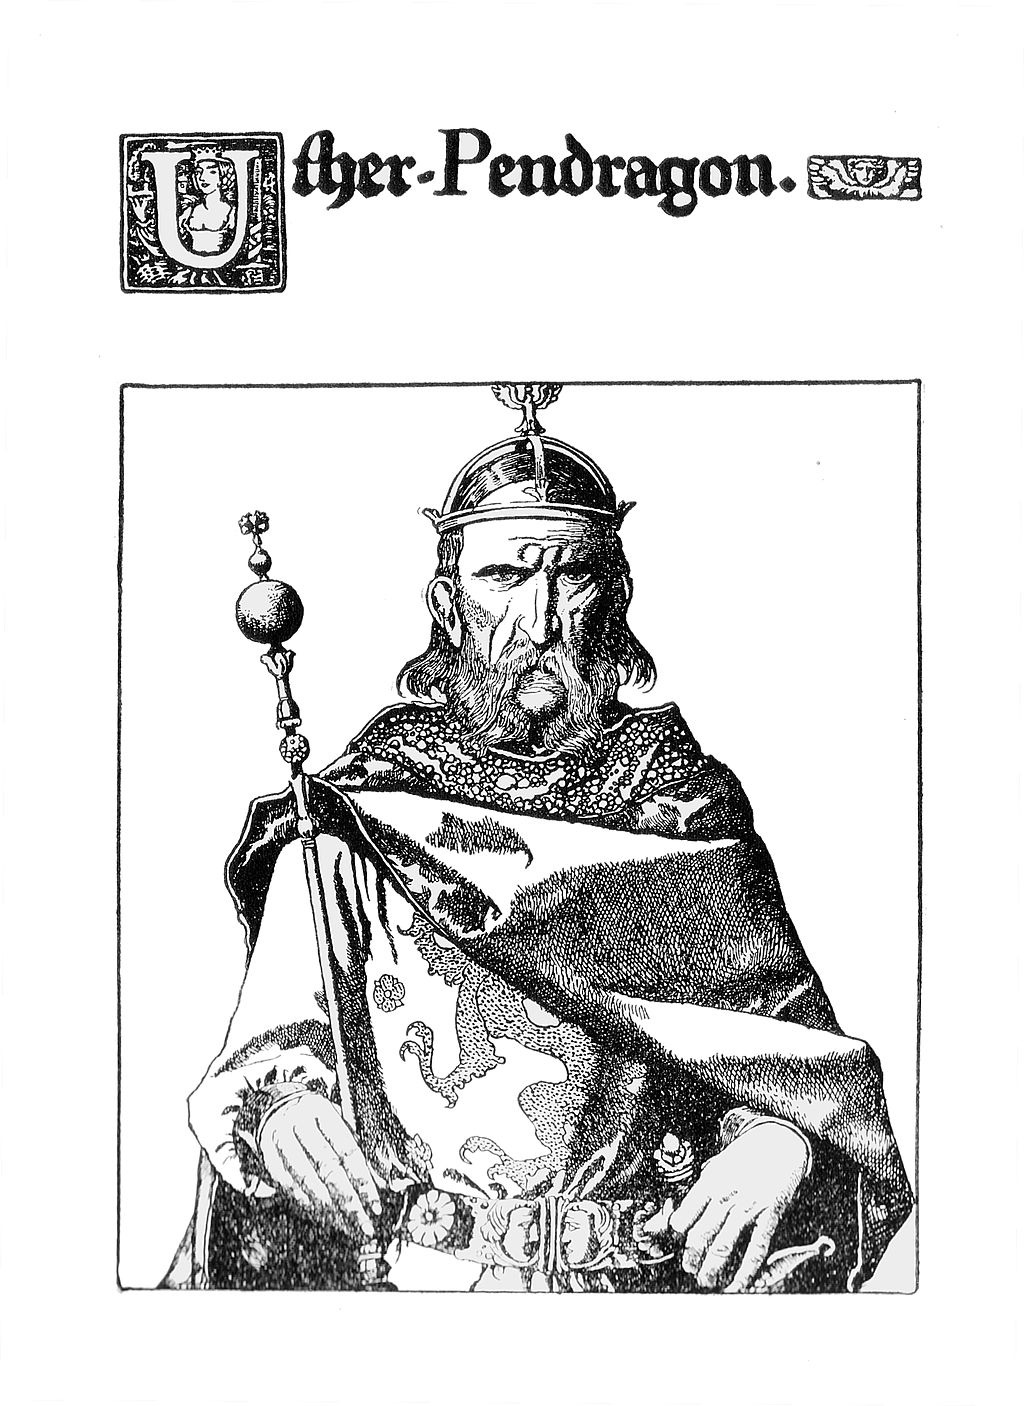 Uther Pendragon: re e padre di Re Artù nelle Leggende Arturiane. Uther Pendragon era un re della Bretagna che combatté contro i Sassoni e il padre di Re Artù.Questo disegno è un'illustrazione di Howard Pyle (1903).